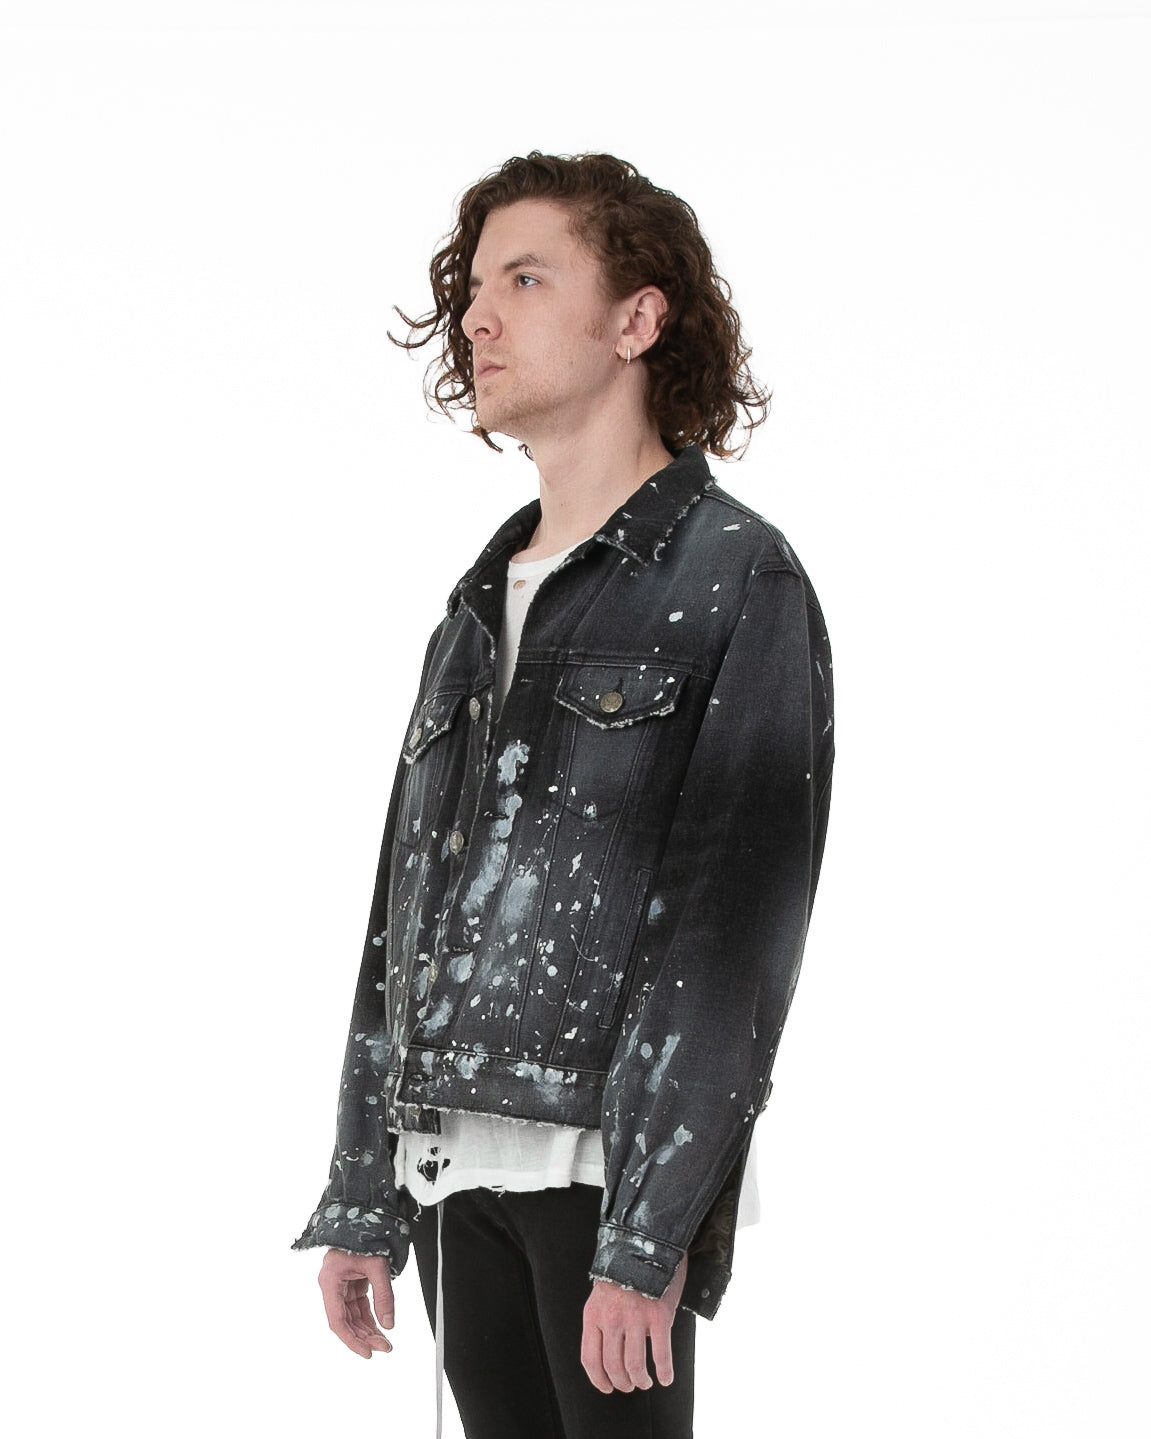 Side of male model wearing Painter's Denim jacket